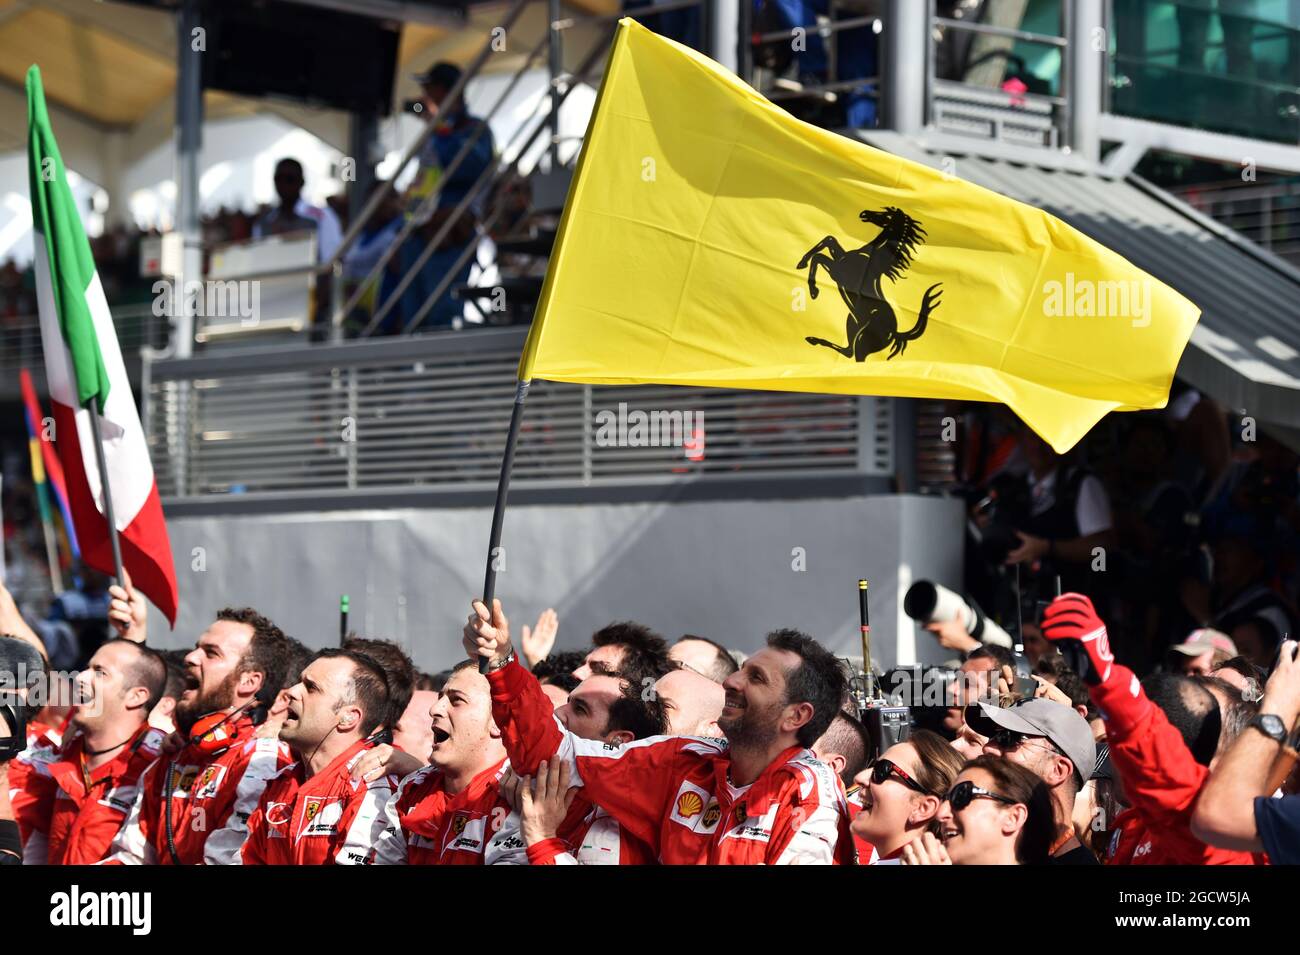 Ferrari celebrates victory at the podium. Malaysian Grand Prix, Sunday 29th March 2015. Sepang, Kuala Lumpur, Malaysia. Stock Photo